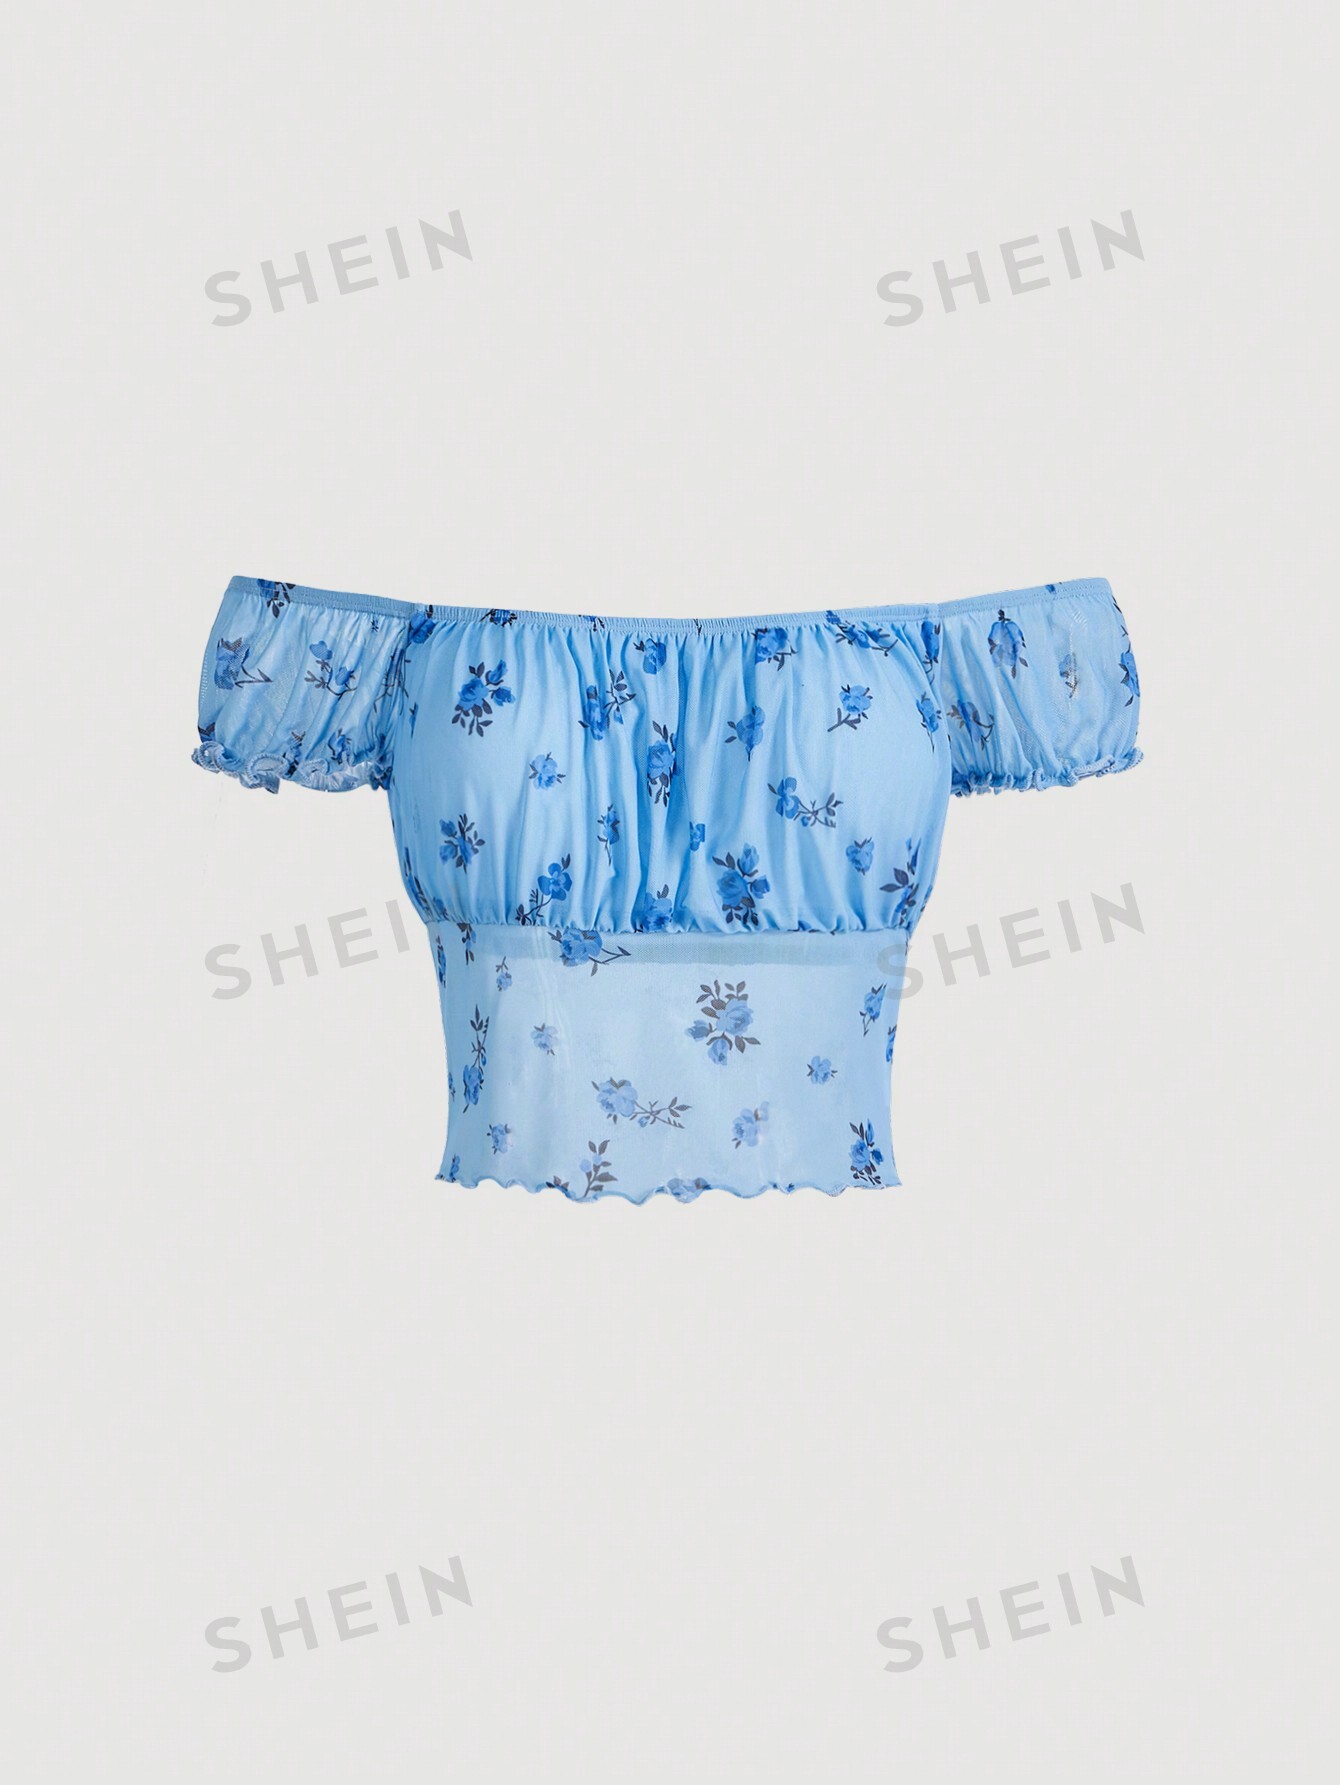 SHEIN Qutie узкая футболка с открытыми плечами и цветочным принтом в стиле пэчворк, голубые